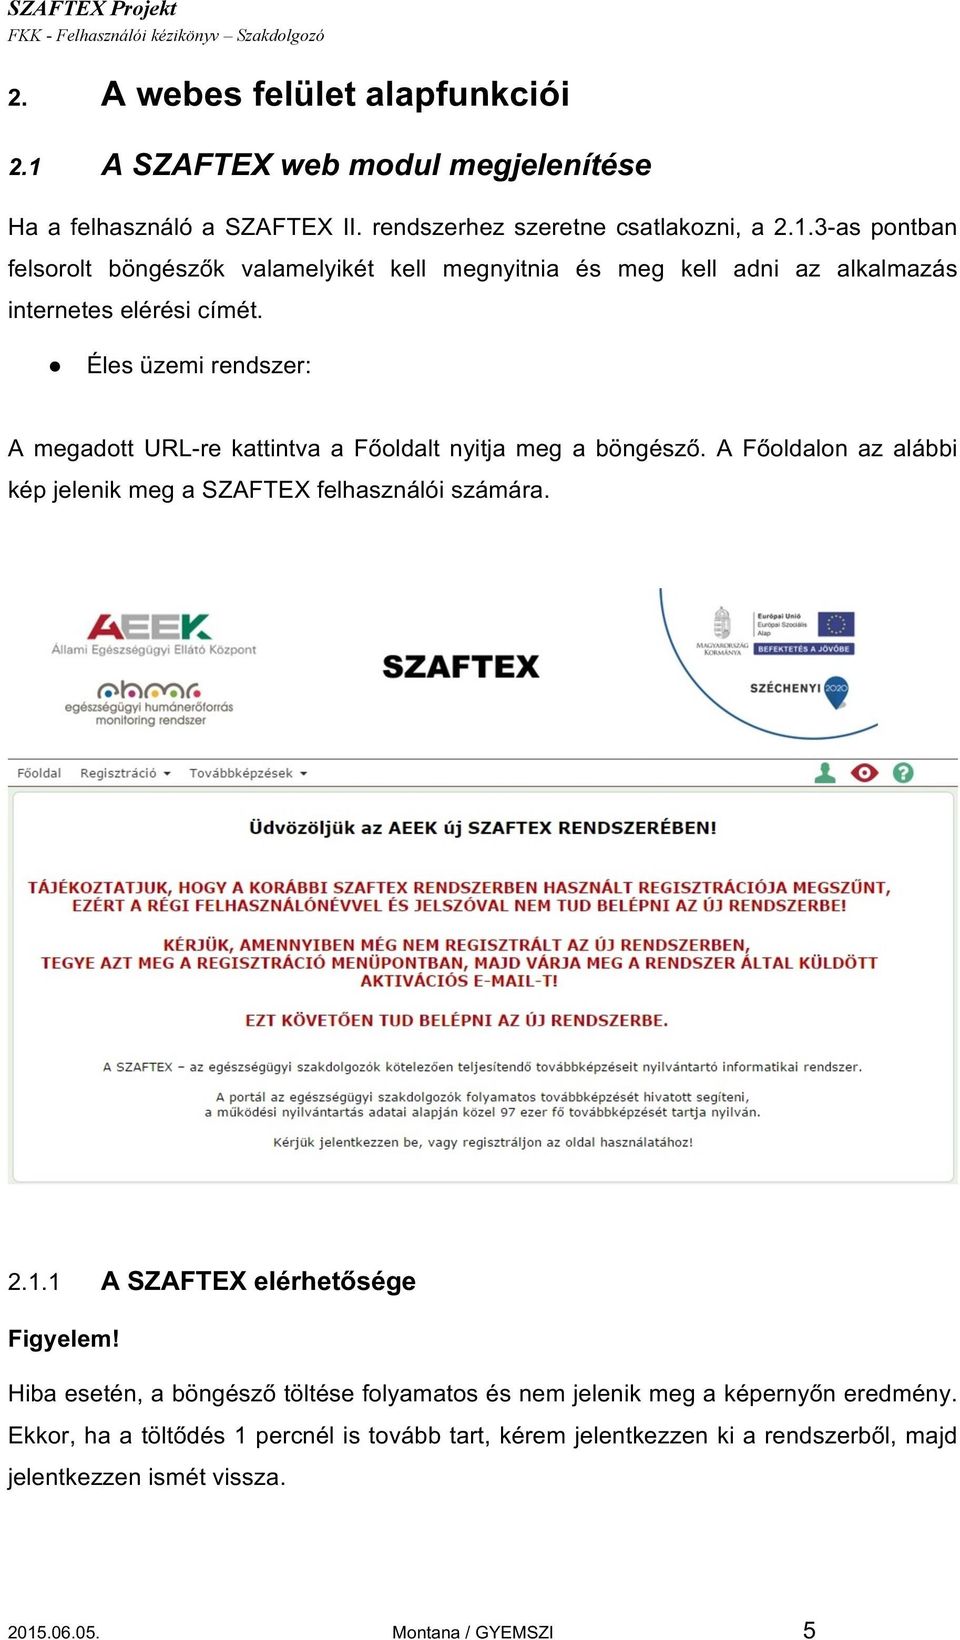 1 A SZAFTEX elérhetősége Figyelem! Hiba esetén, a böngésző töltése folyamatos és nem jelenik meg a képernyőn eredmény.